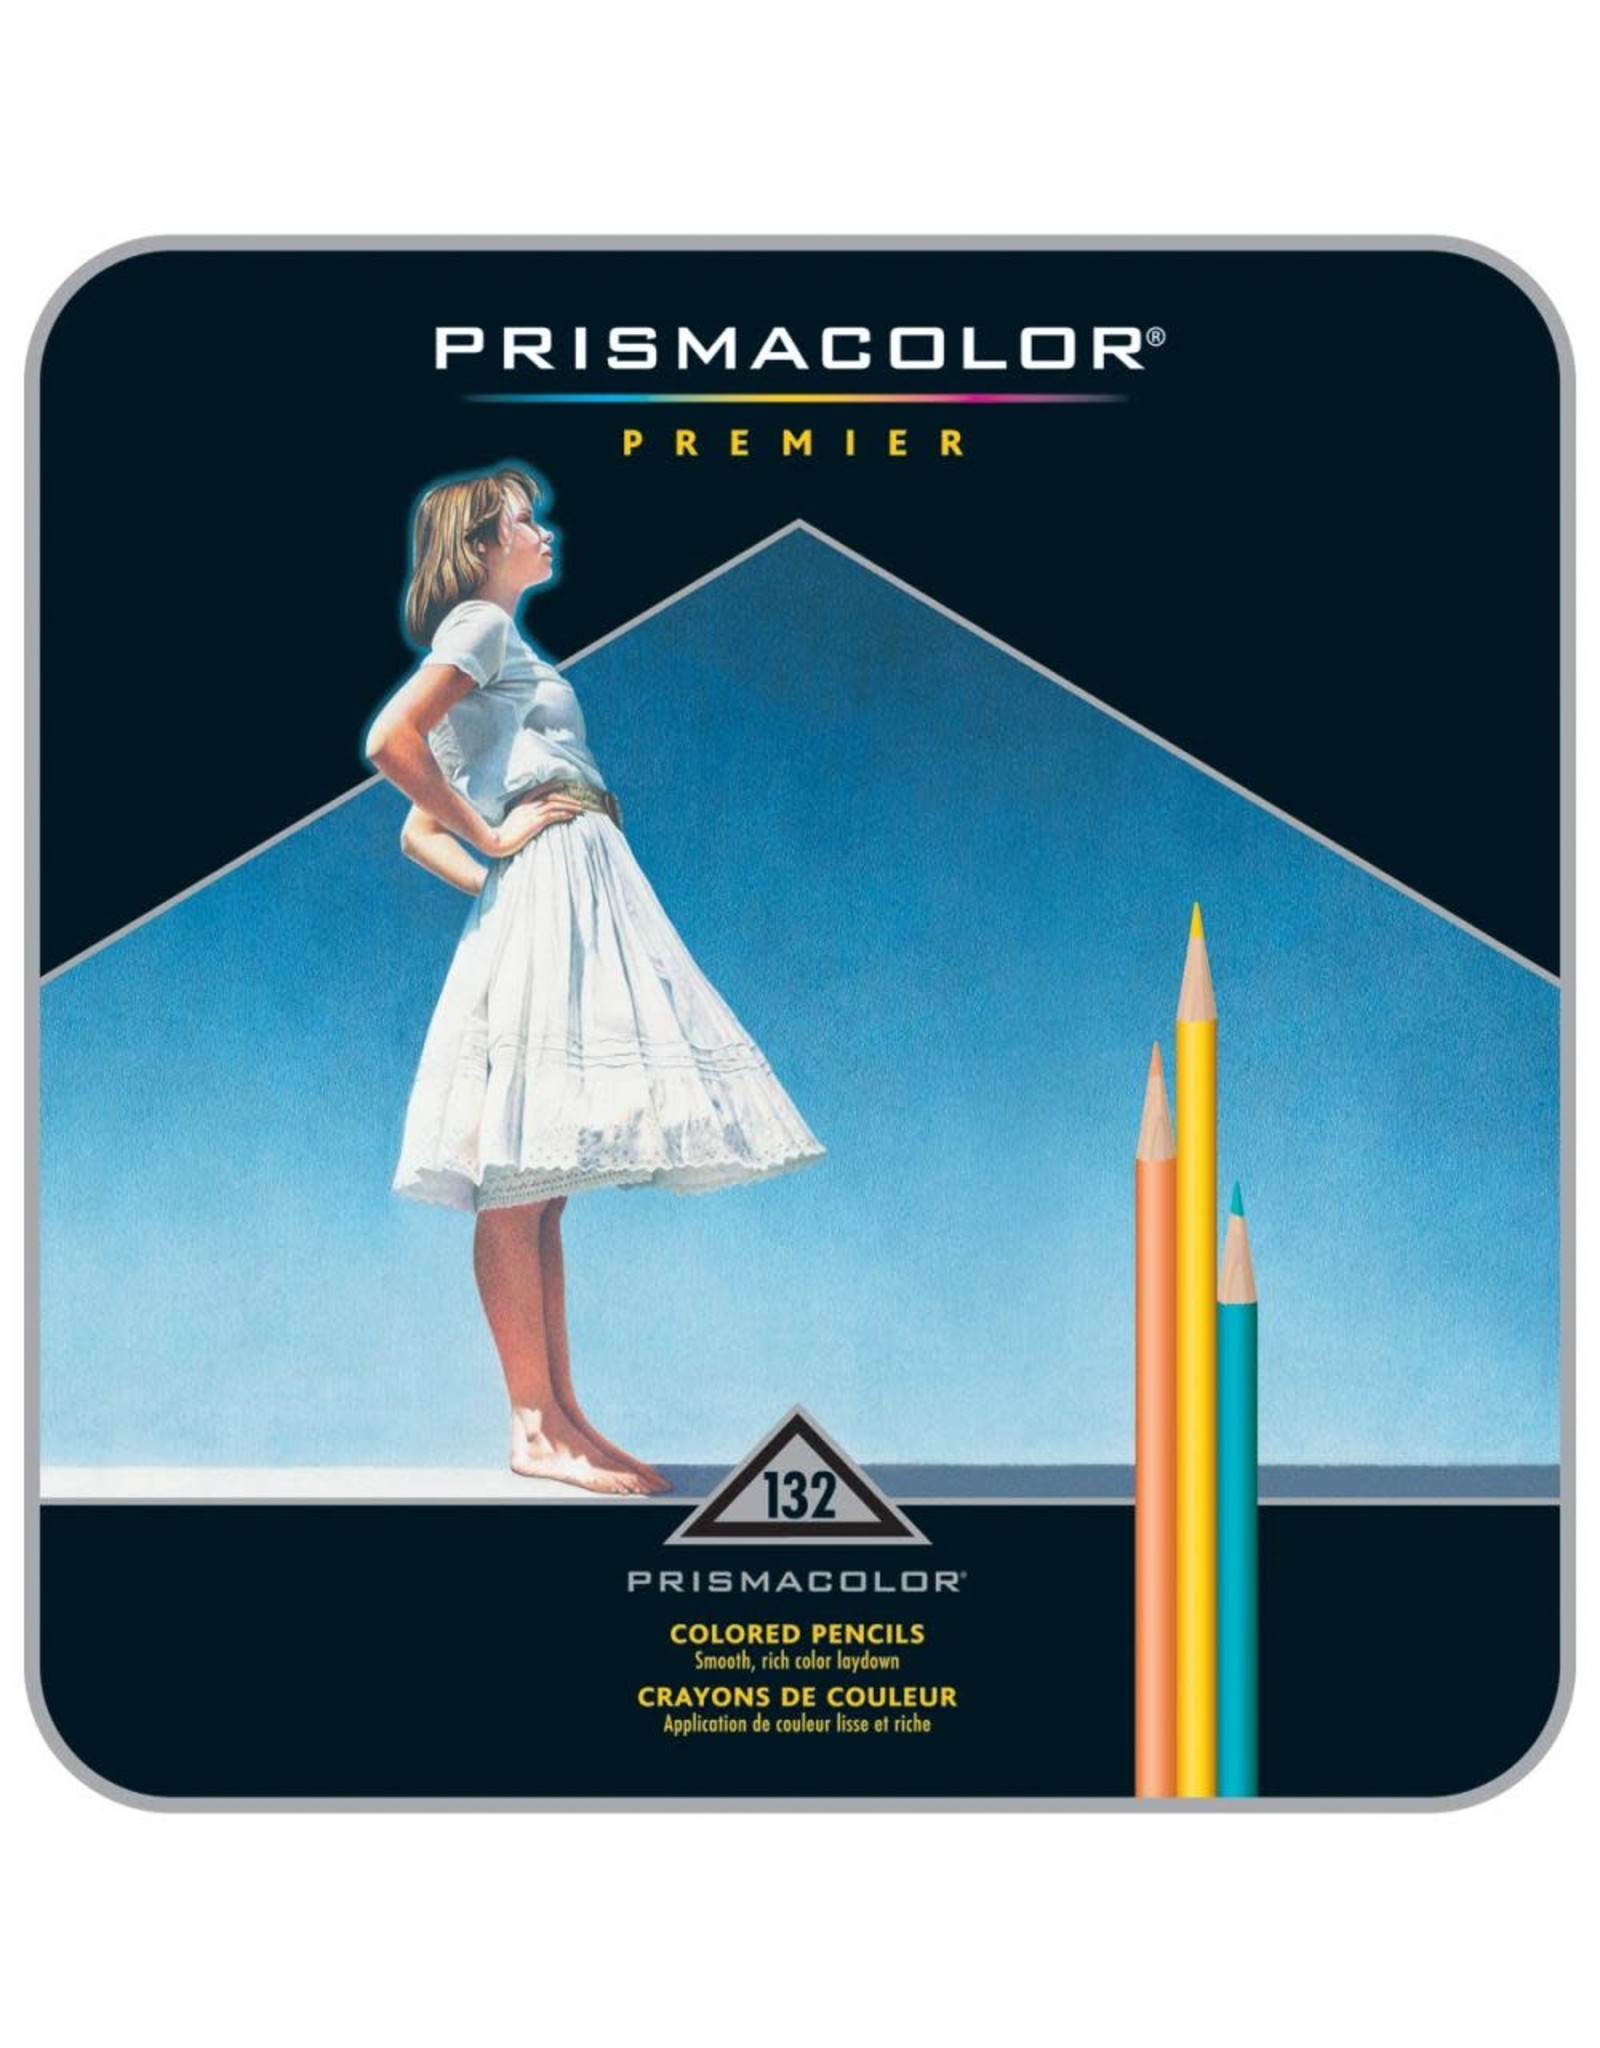 PRISMACOLOR PRISMACOLOR PREMIER COLORED PENCILS 132/PACKAGE